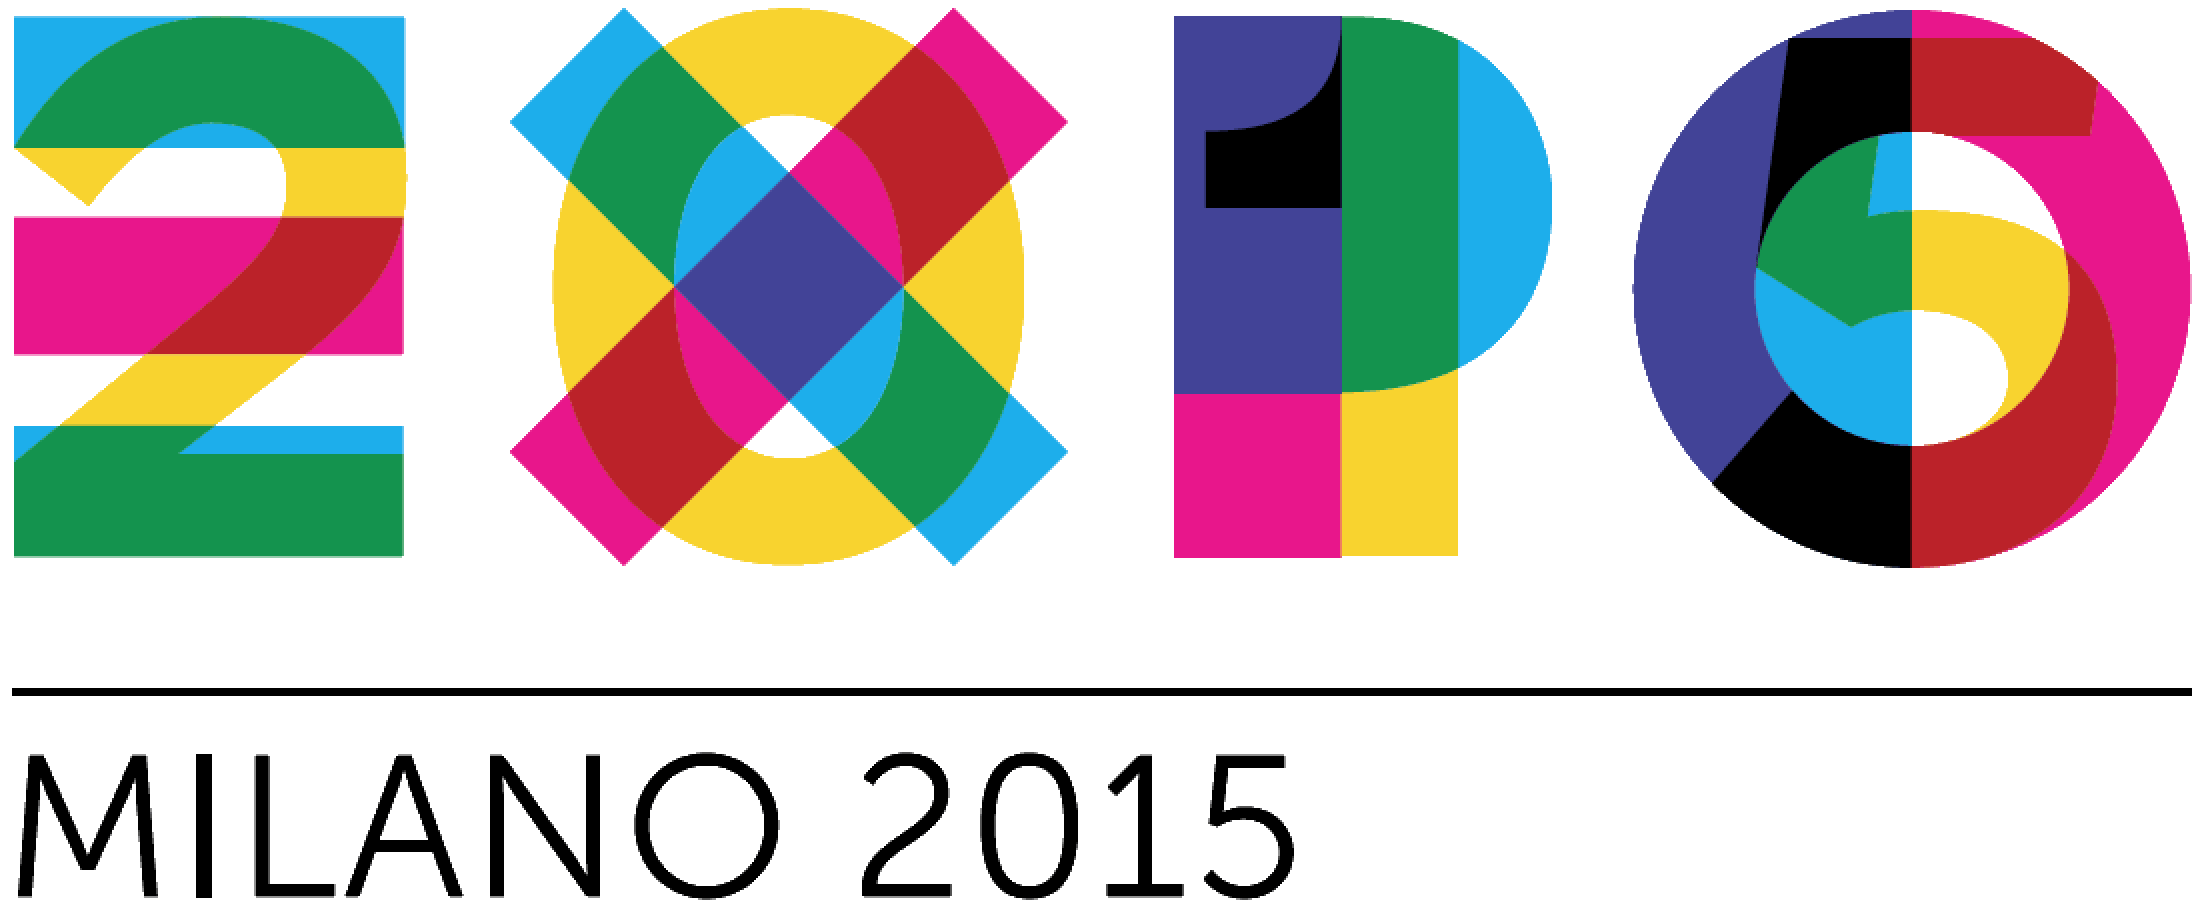 Expo 2015 Milan logo